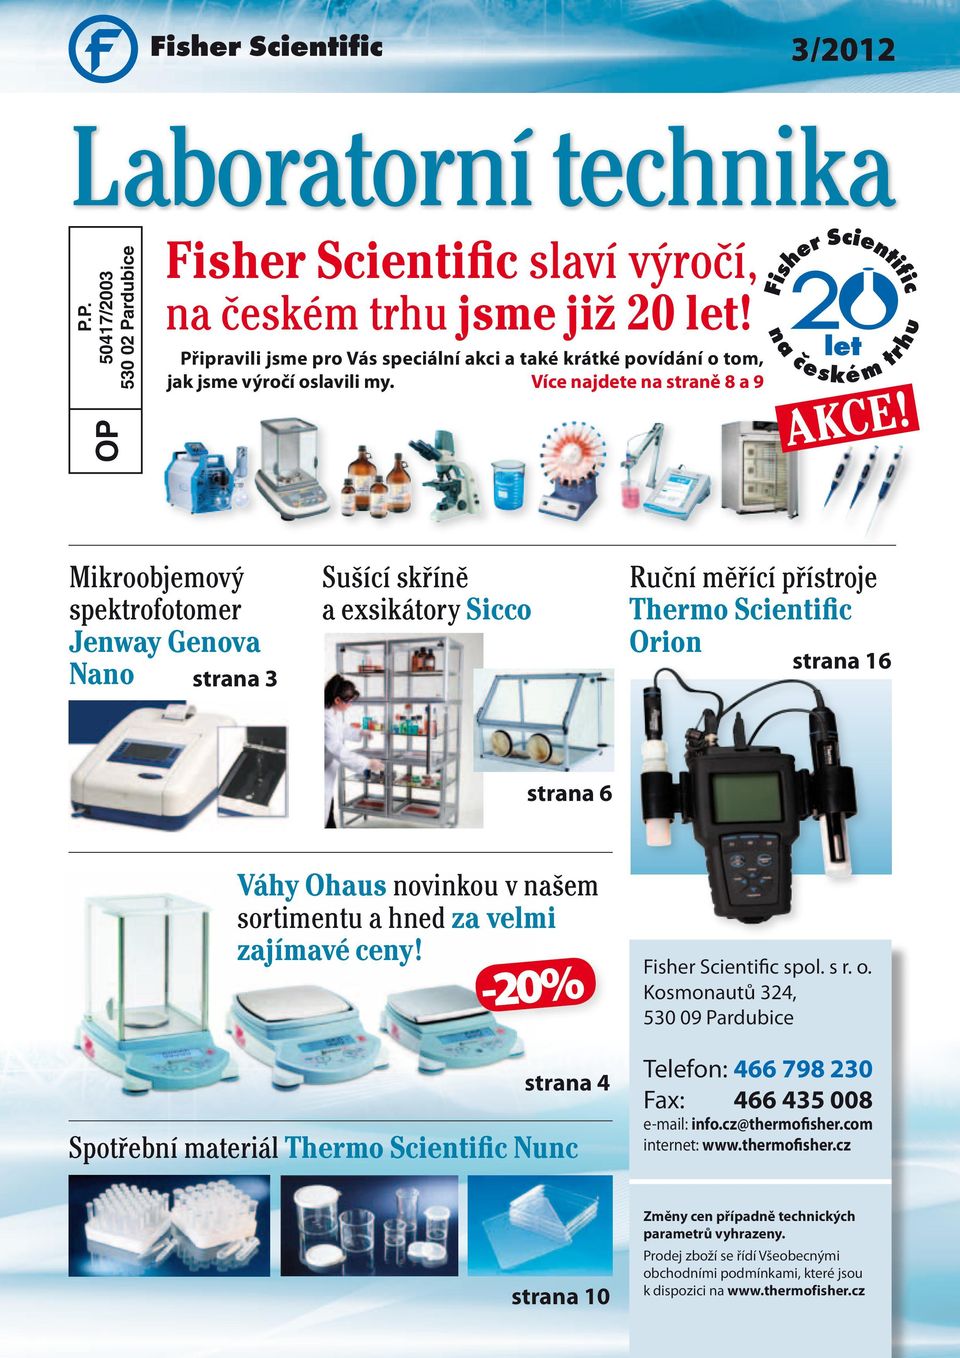 Laboratorní technika. Fisher Scientific slaví výročí, - PDF Free Download